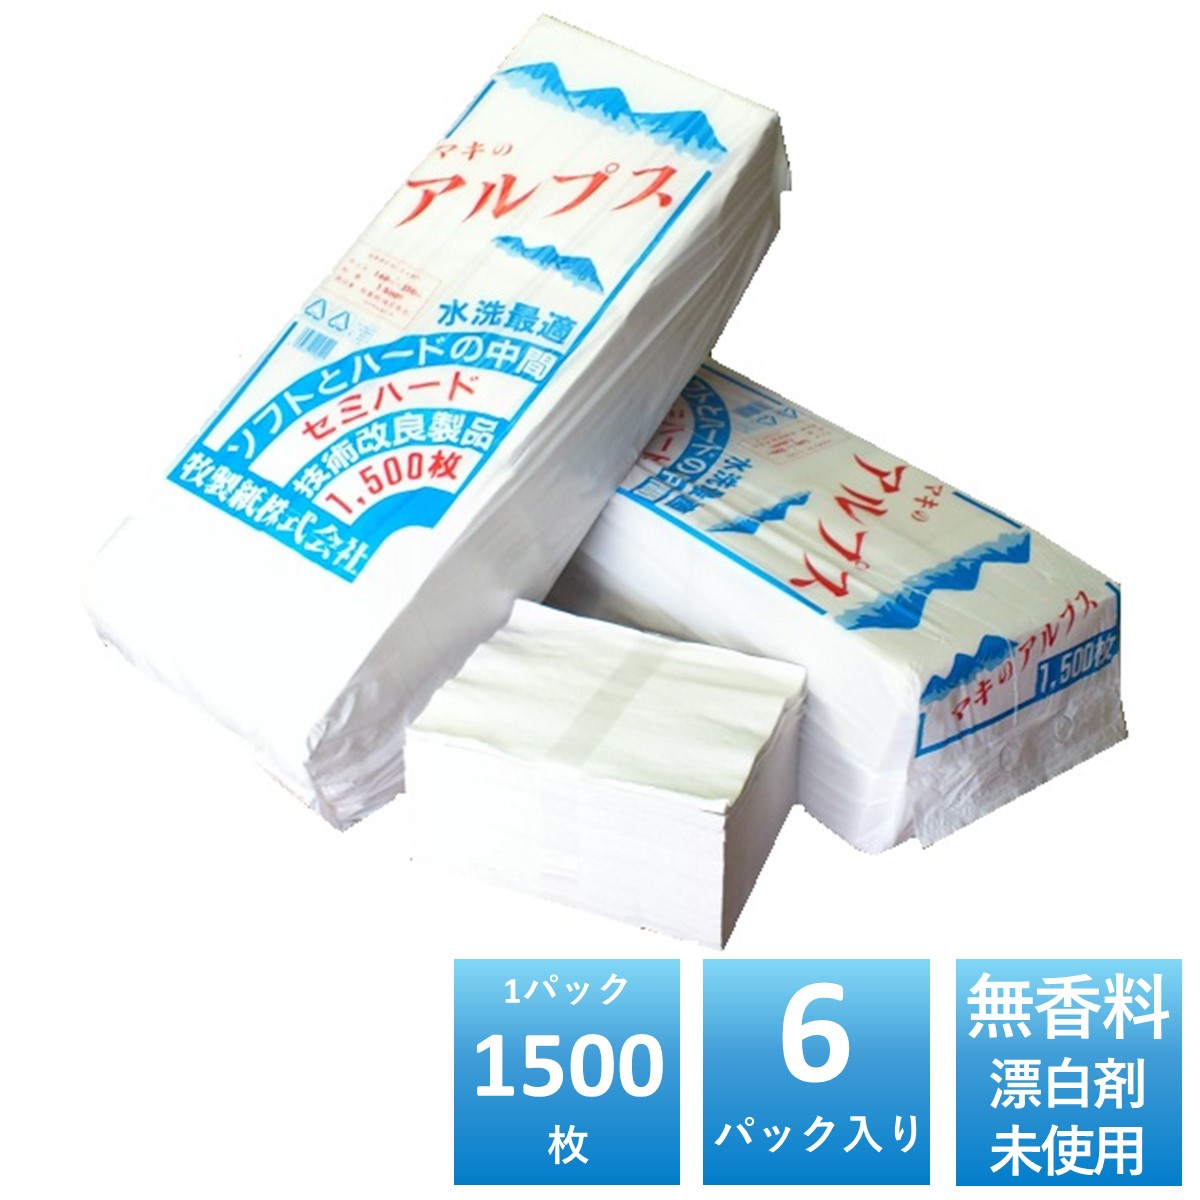 マキのアルプス 白ちり紙 1500枚×6パック入 落とし紙 丈夫なセミハードタイプ 無香料 無塩素漂白 無添加 古紙パルプ 再生紙100 国産 日本製